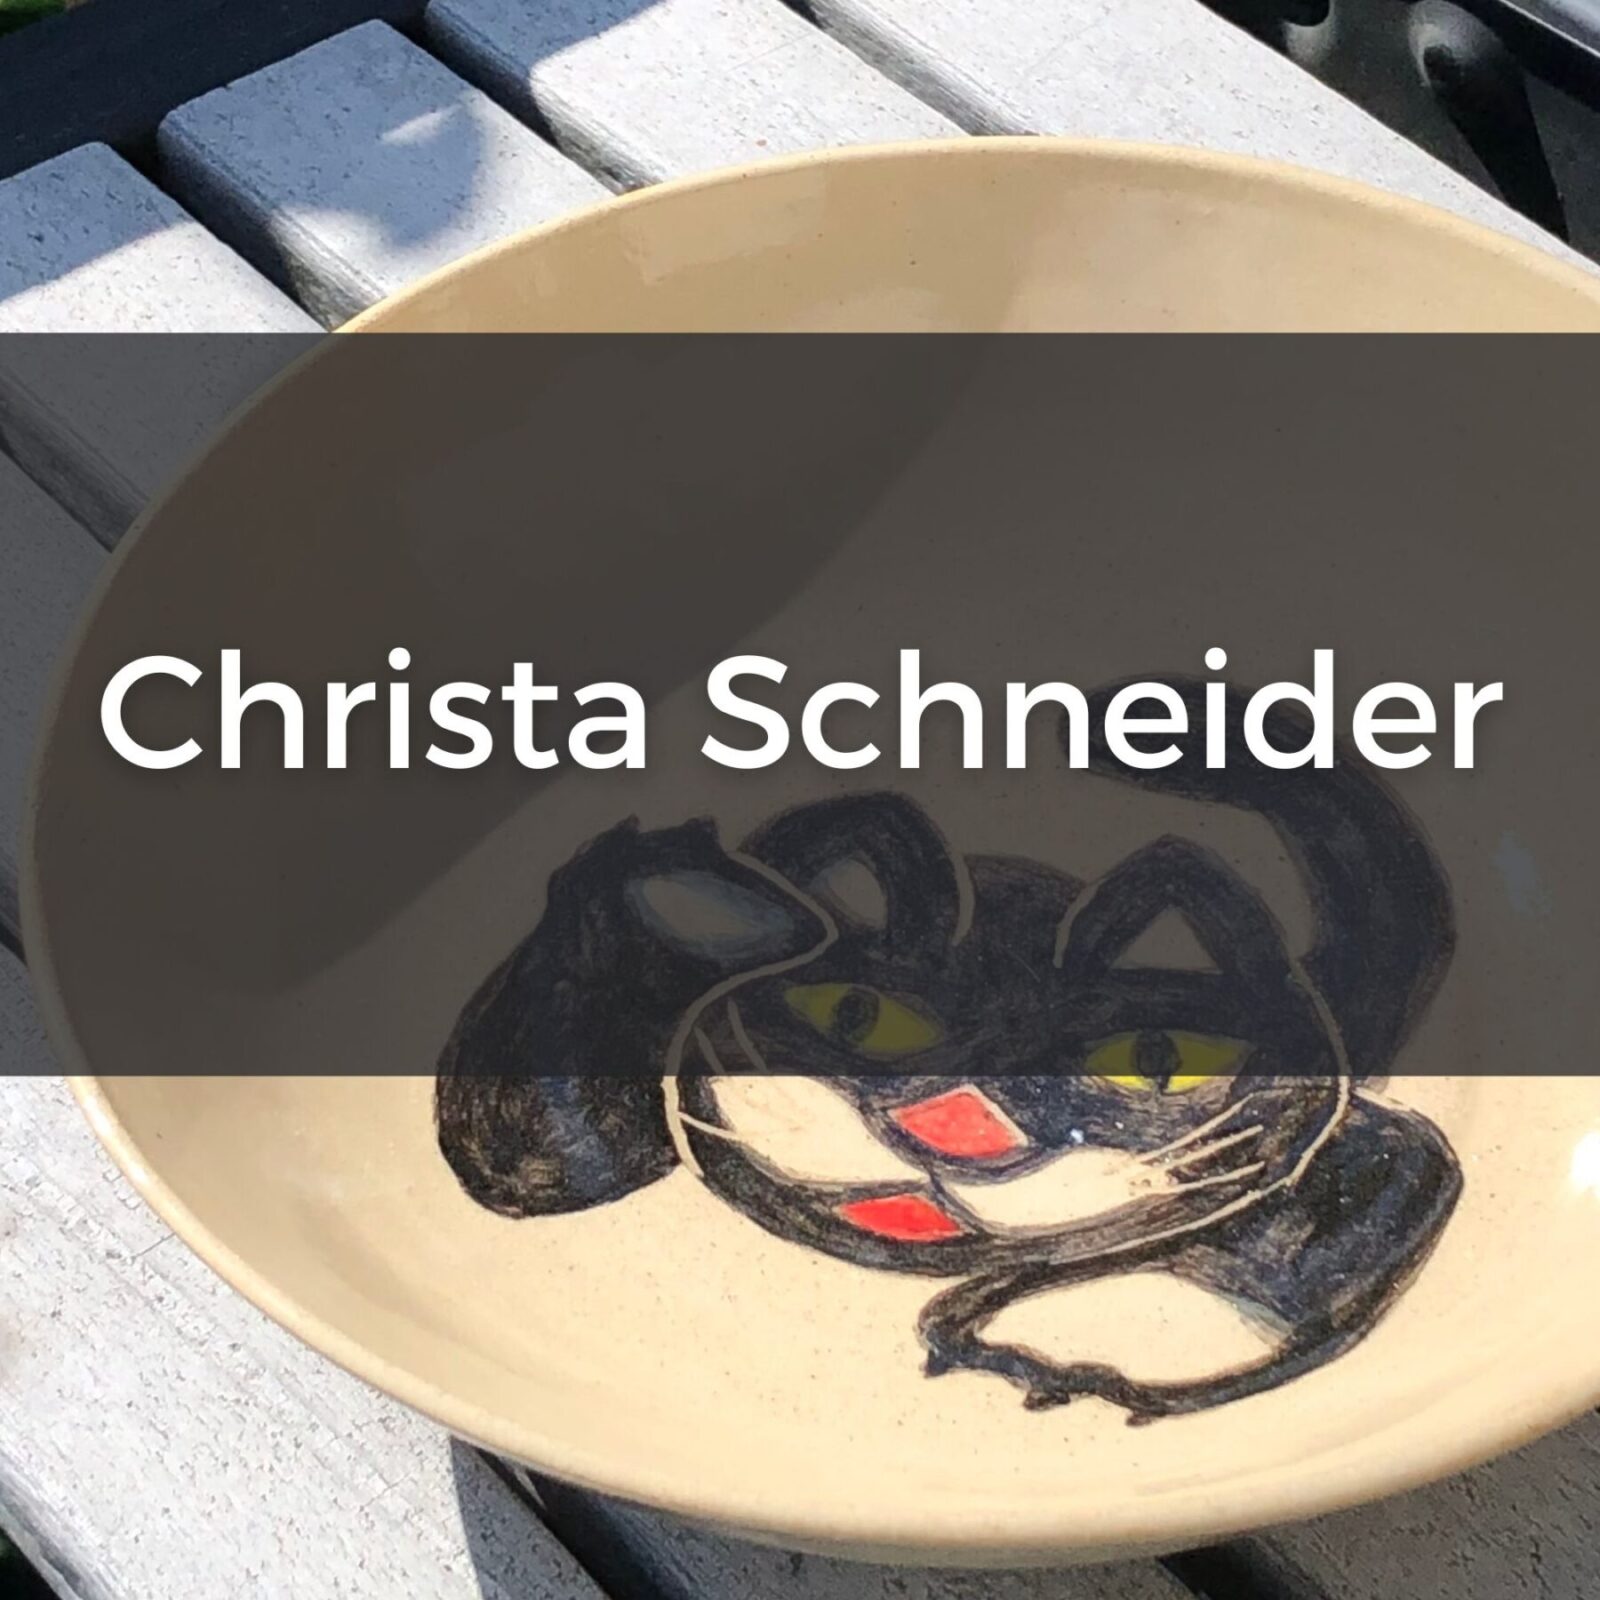 Christa Schneider, pottery